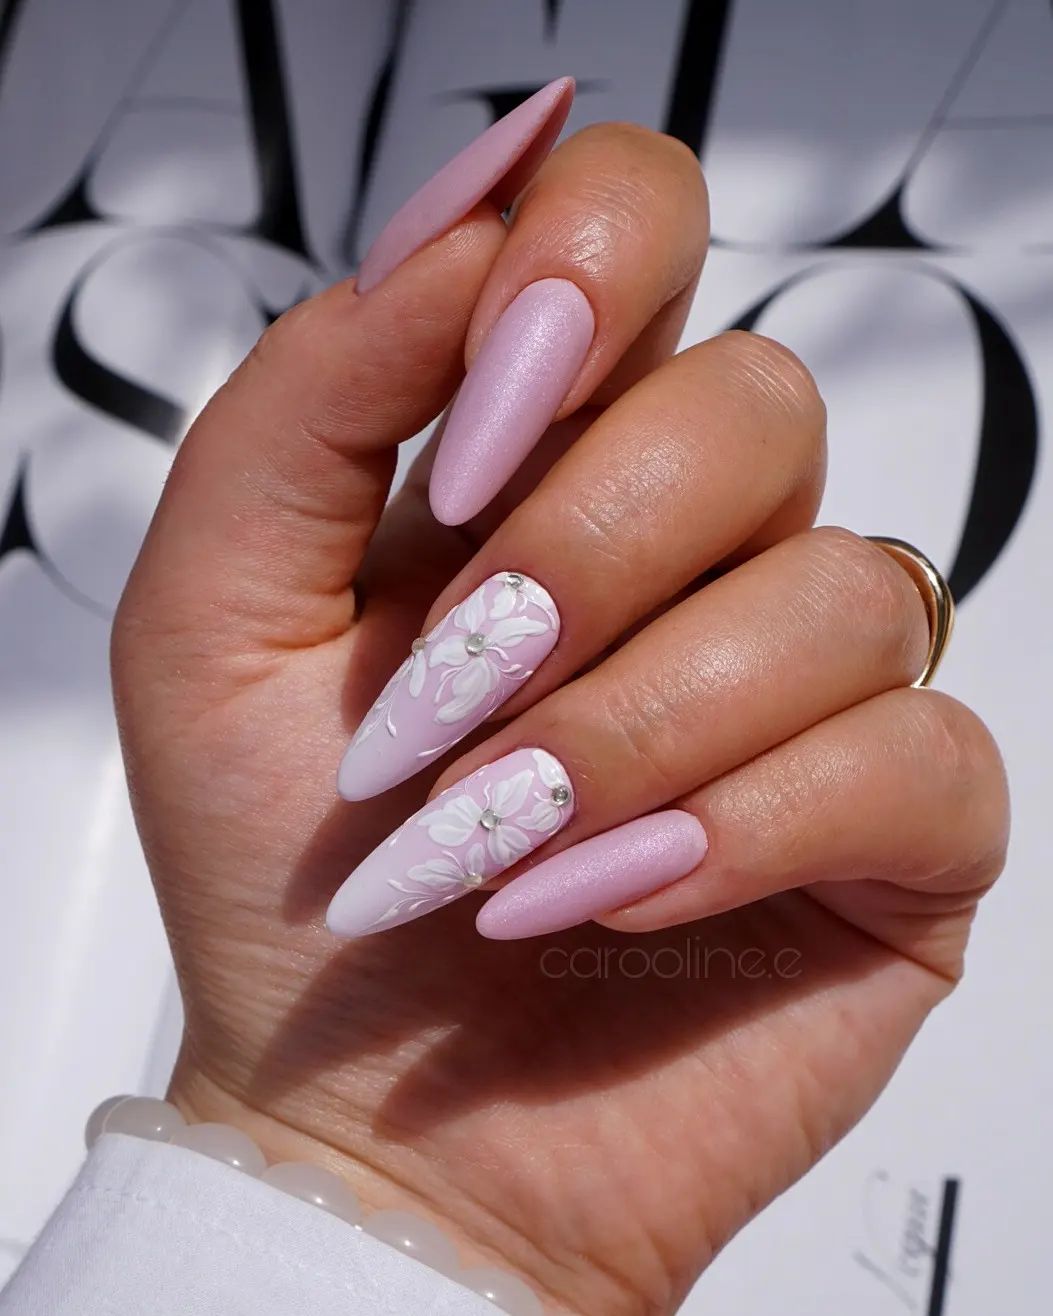 Lange amandelroze nagels met wit bloemendessin